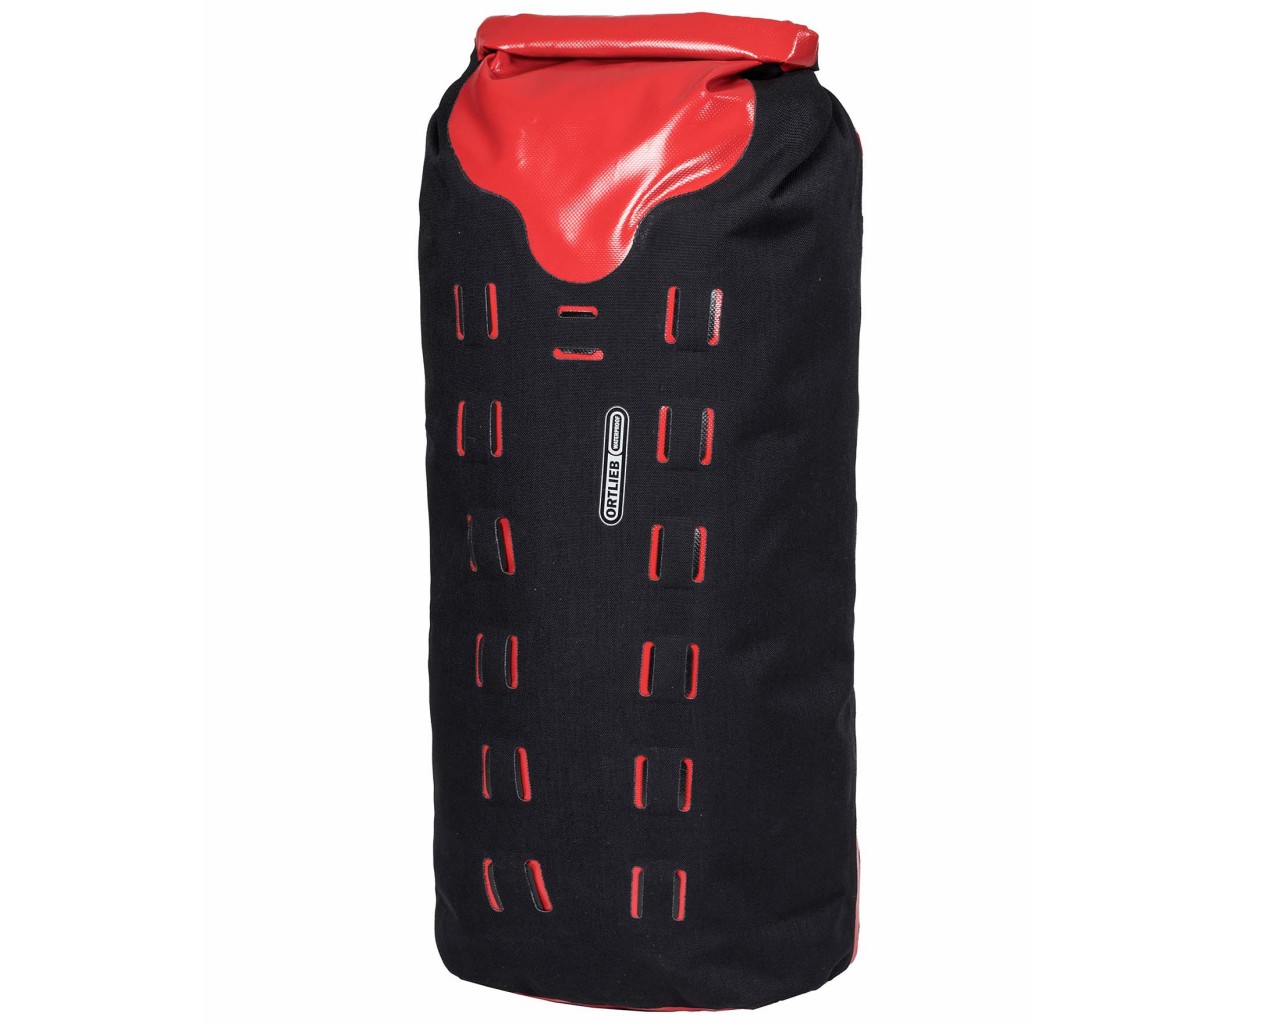 Ortlieb Gear-Pack 32 liter waterproof dry bag/backpack | black-red